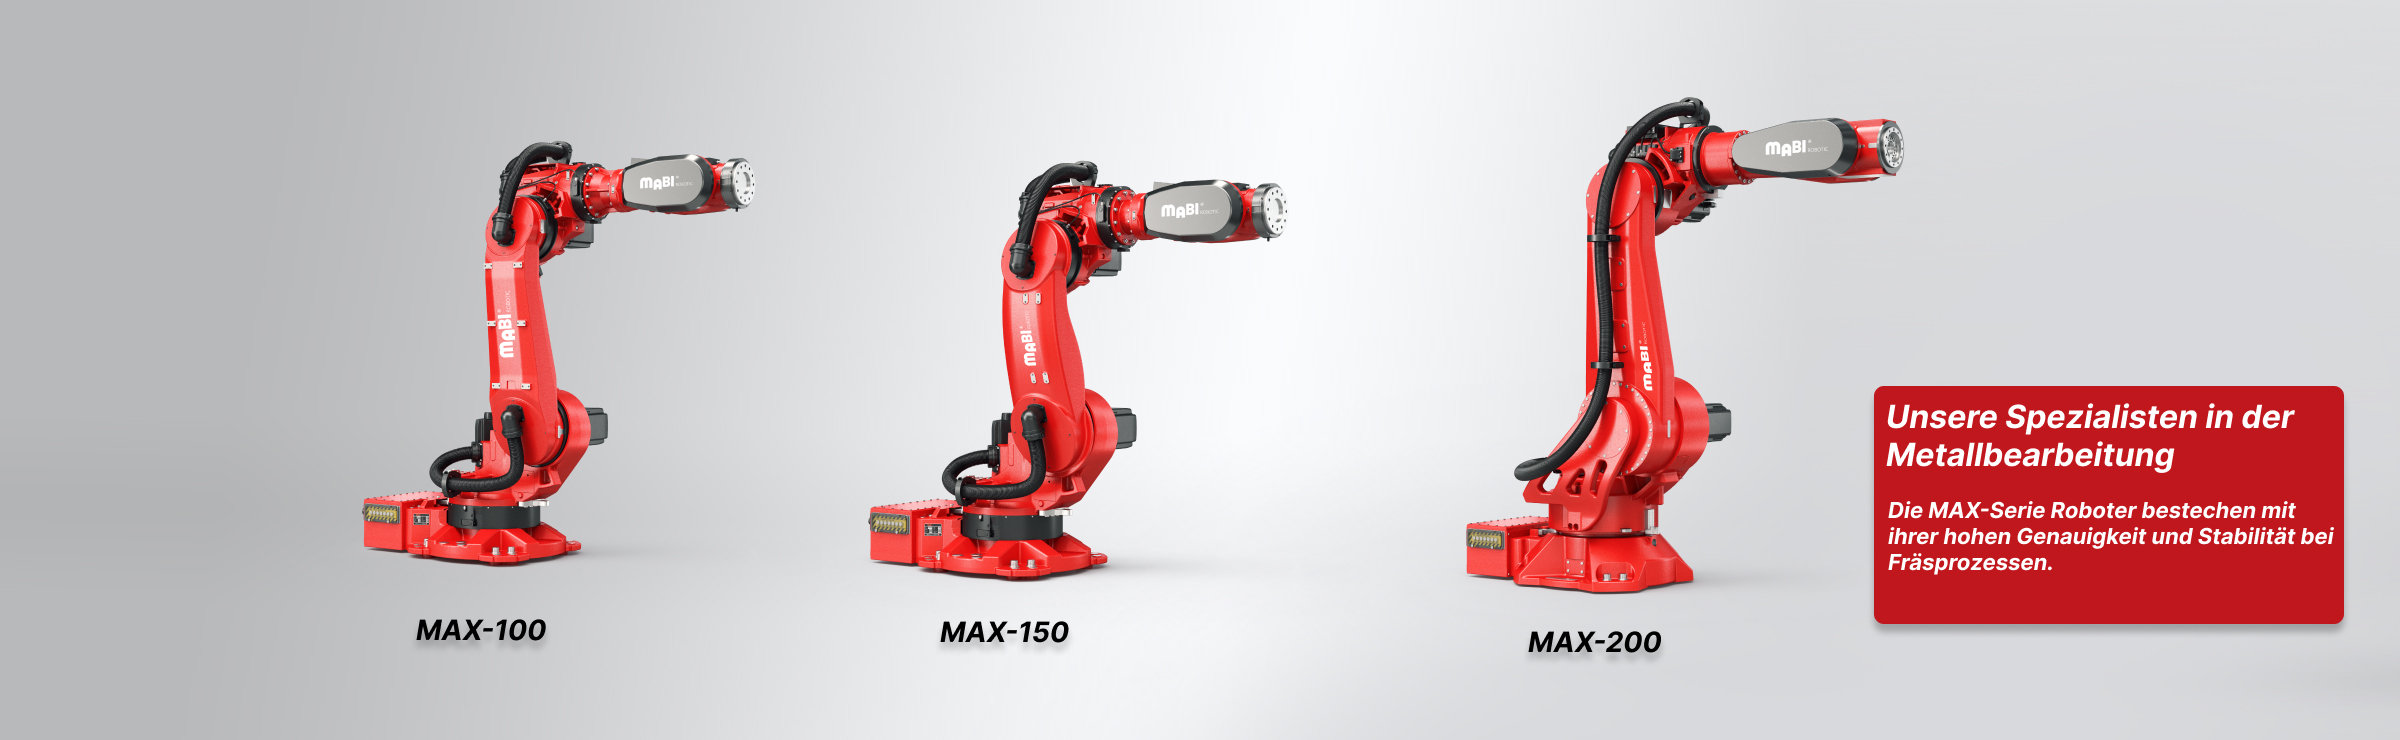 MAX-100 | MAX-150 | MAX-200 from MABI Robotic